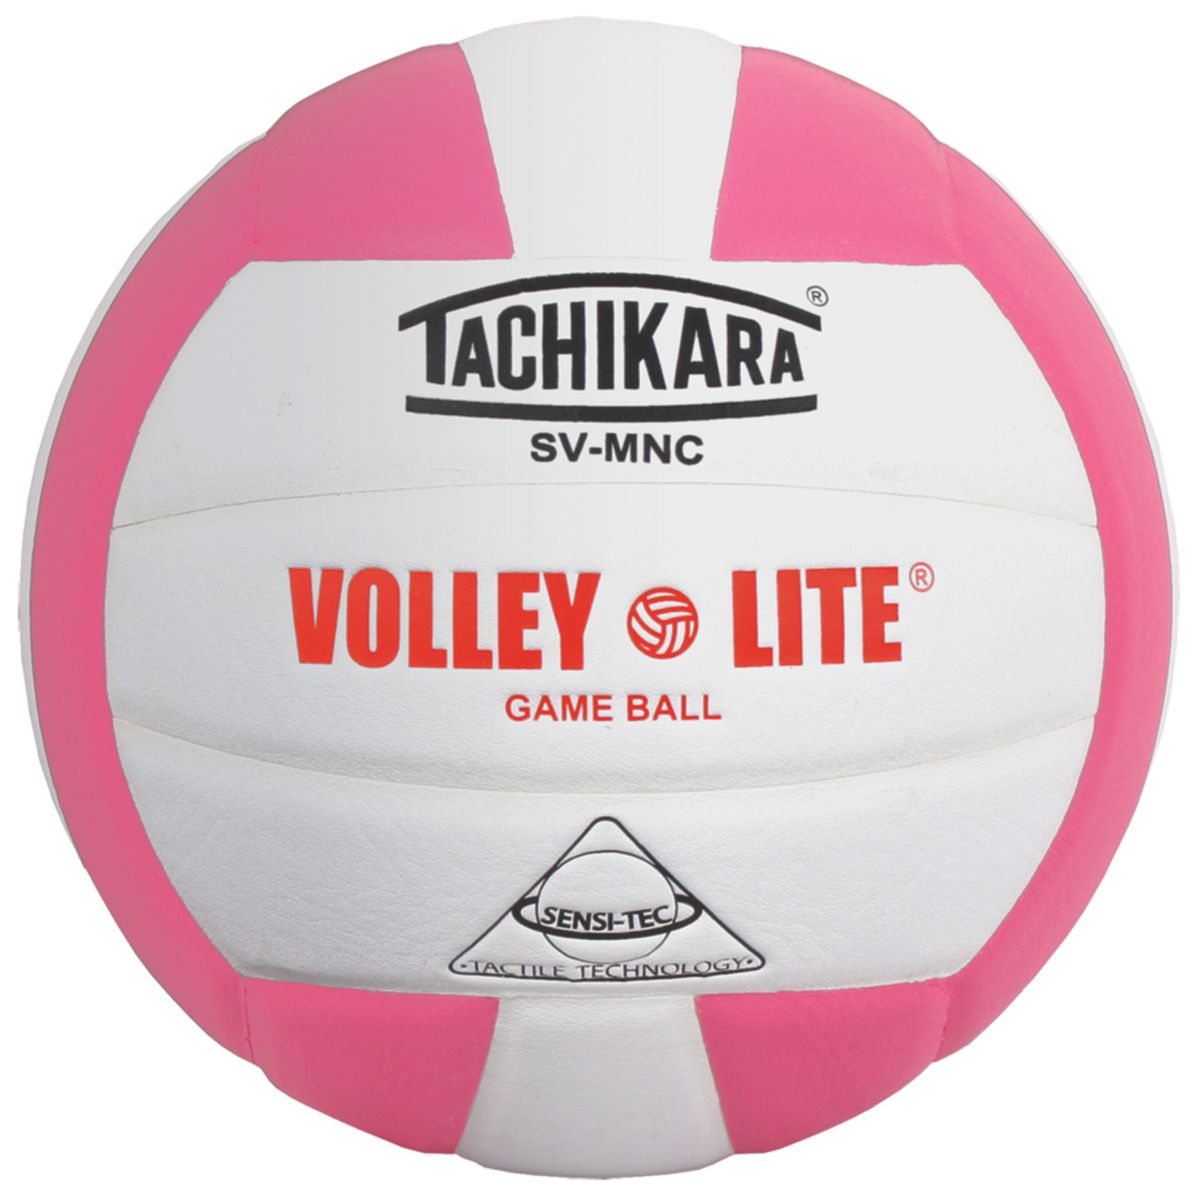 Тачикара SVMNC Volley-Lite Тренировочный волейбол Tachikara